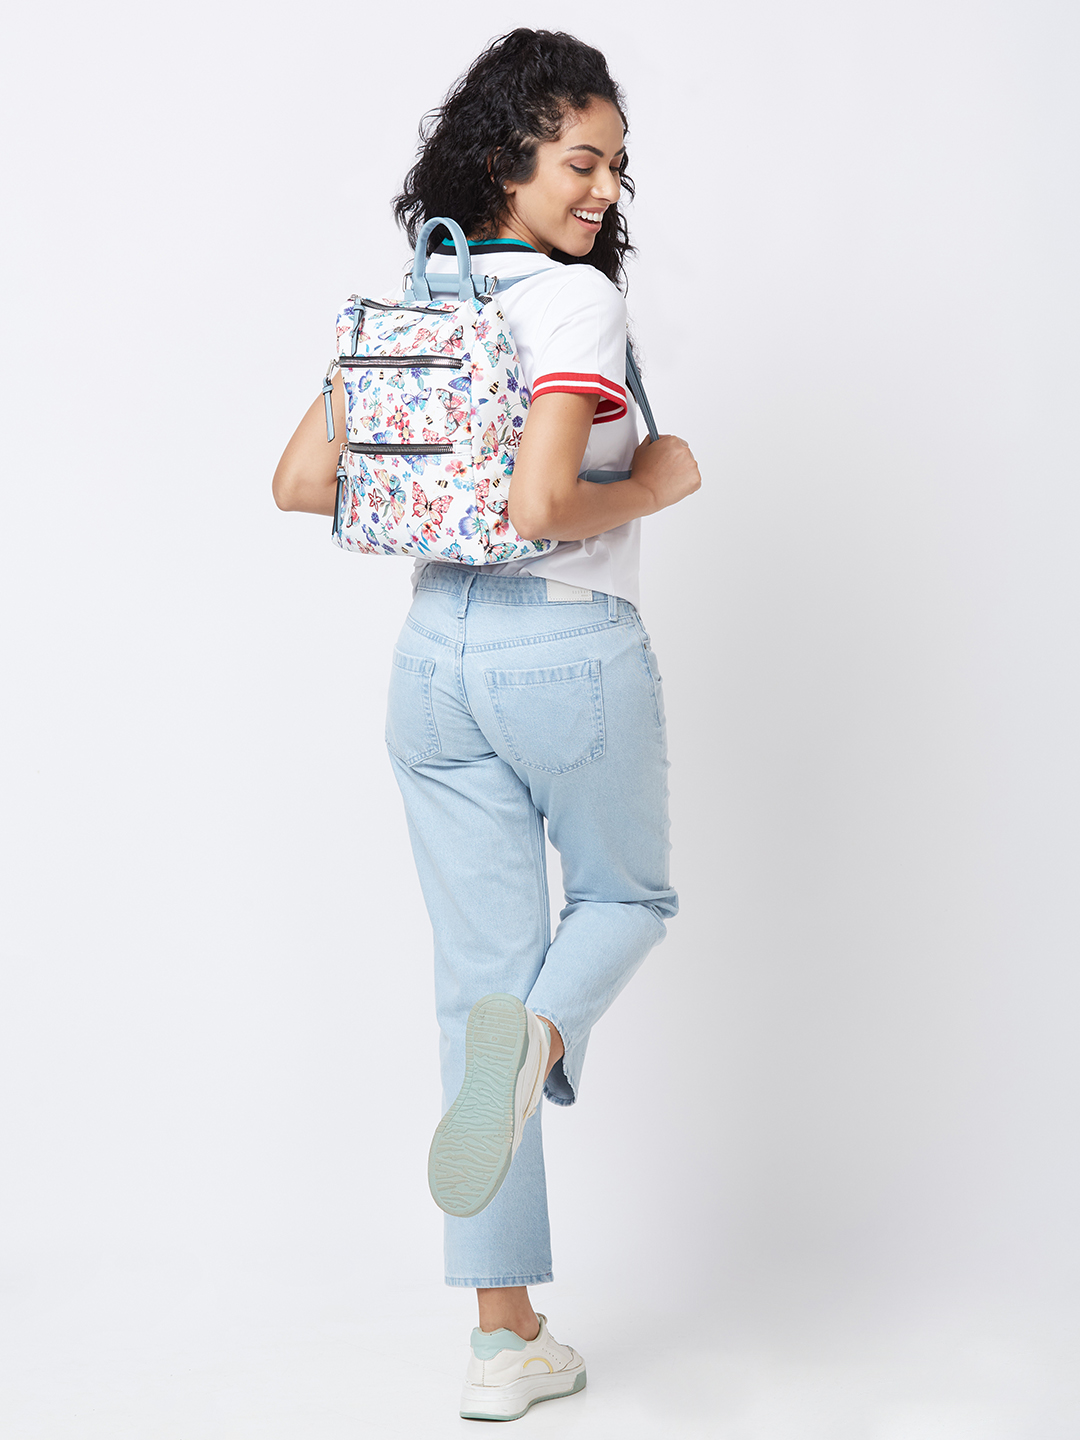 Globus Women Multi Print Smart Casual Backpack